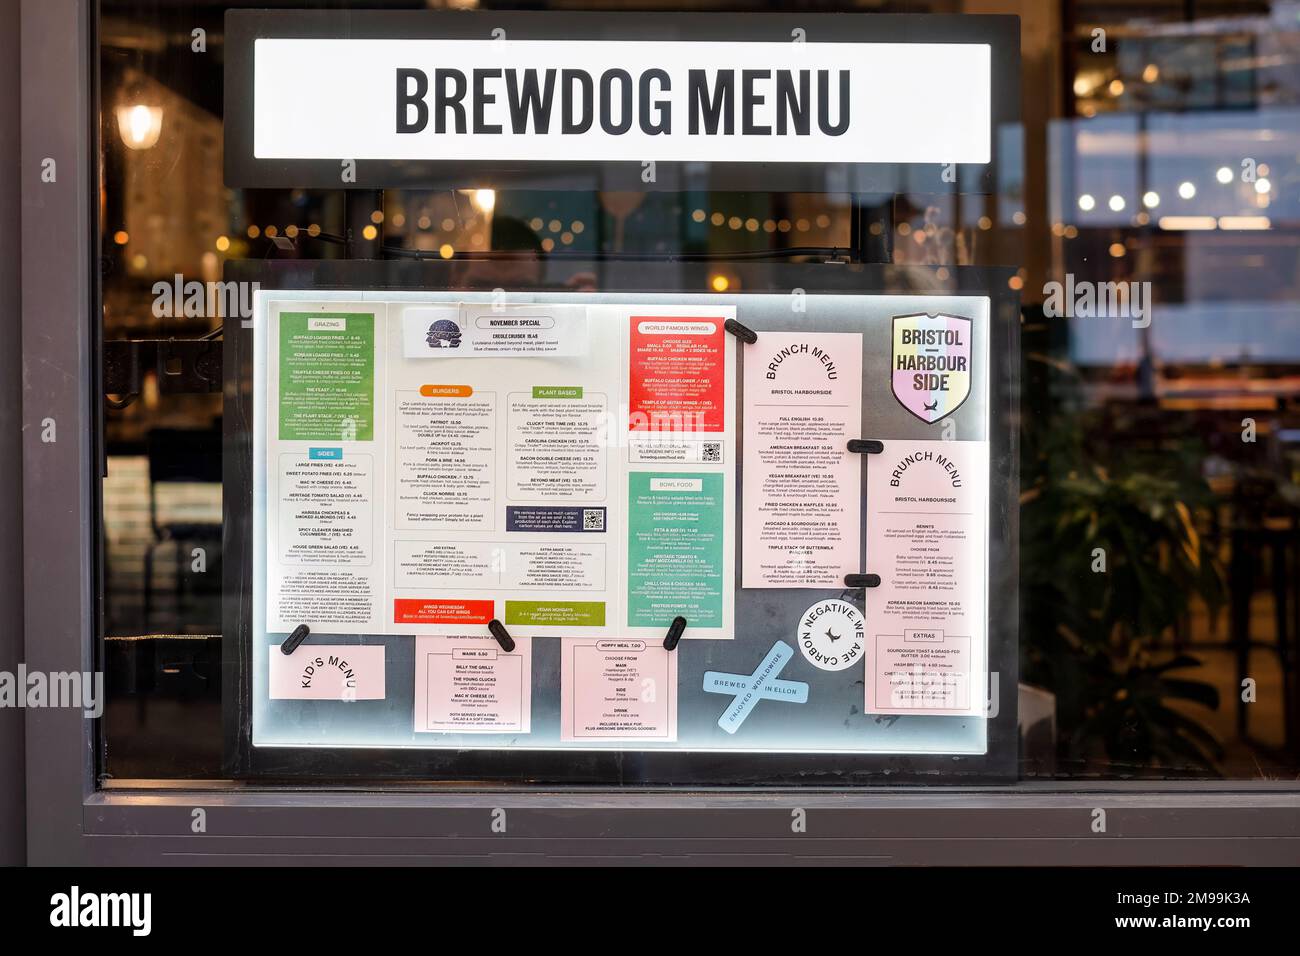 Un grand pub Brewdog situé sur le port à Bristol, Royaume-Uni. Le menu de la nourriture est clairement affiché sur une fenêtre à l'avant du pub Banque D'Images